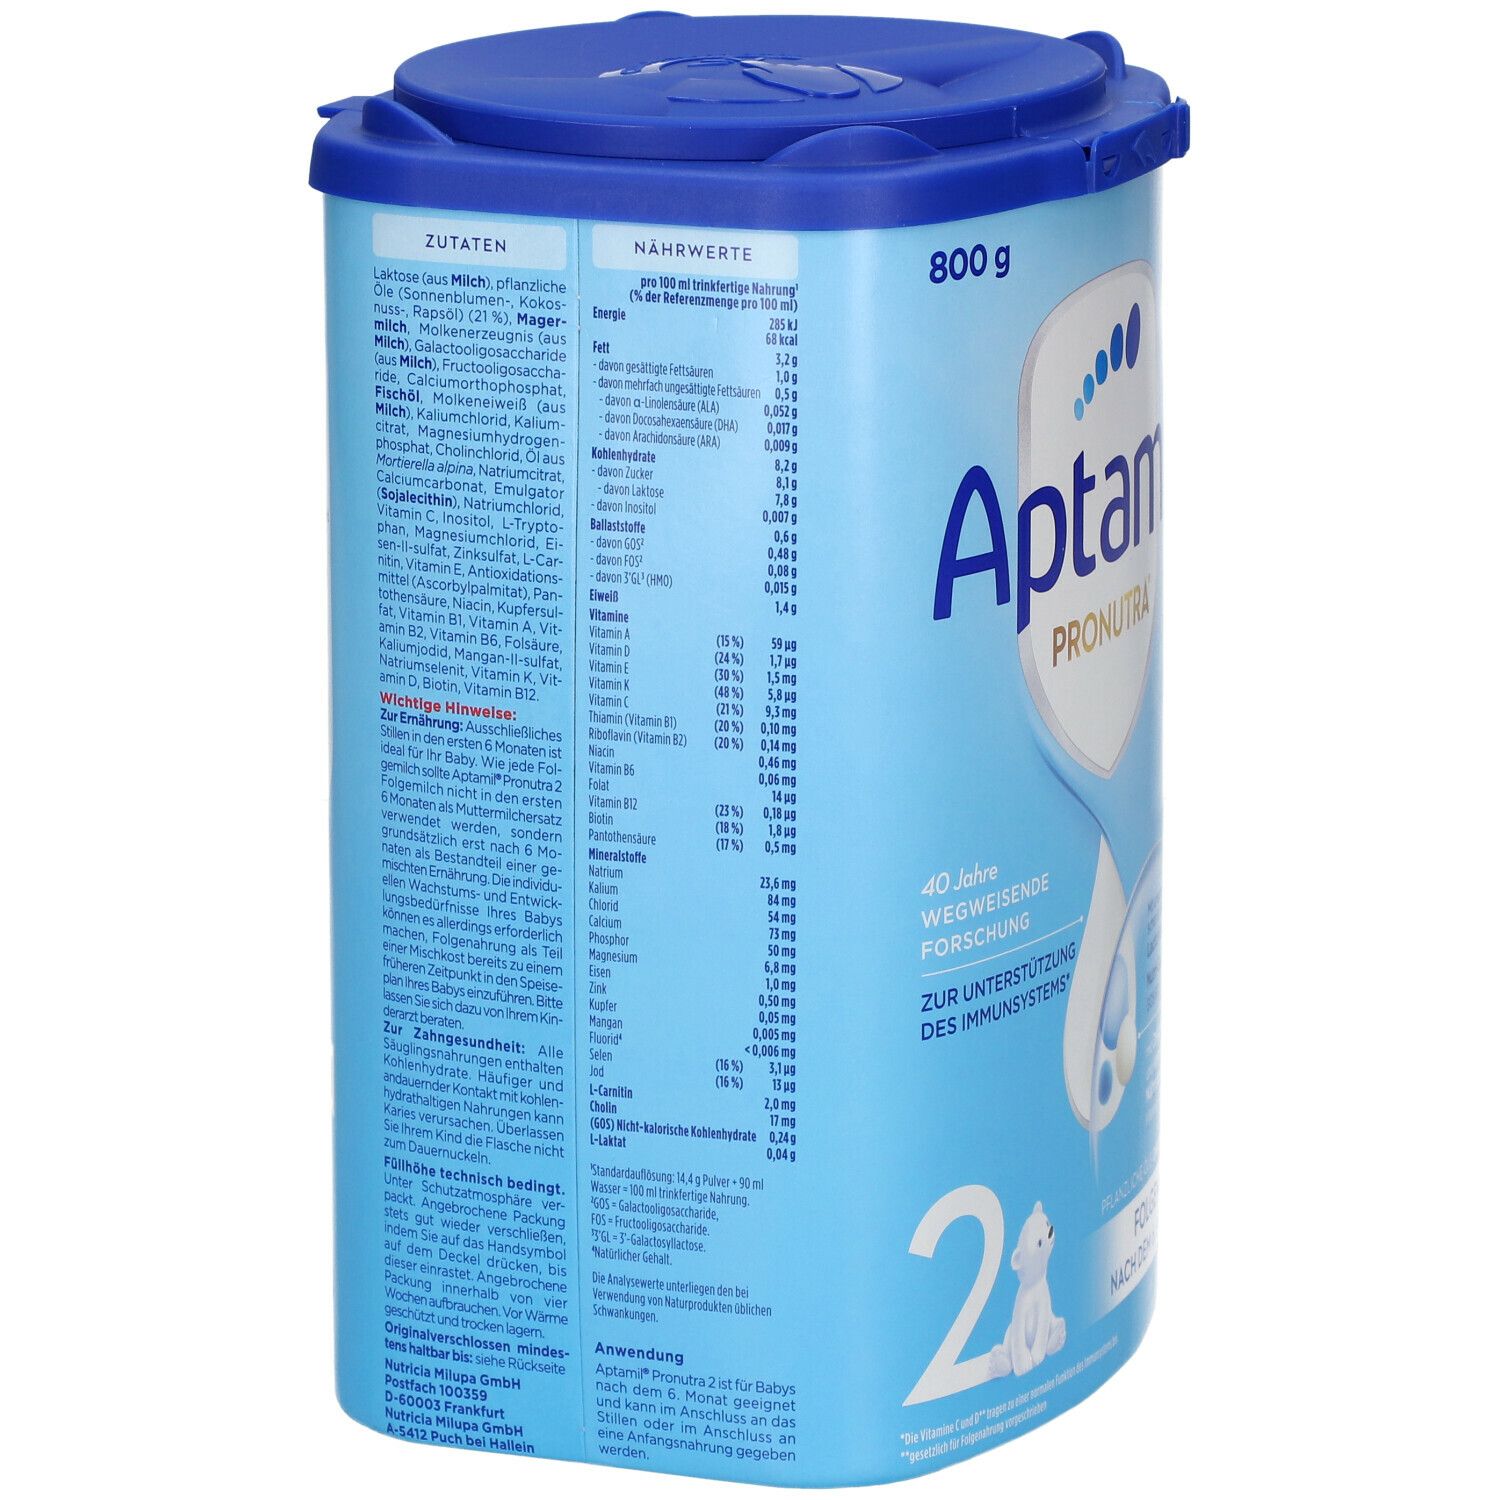 Aptamil® Pronutra 2 Folgemilch ab dem 6. Monat